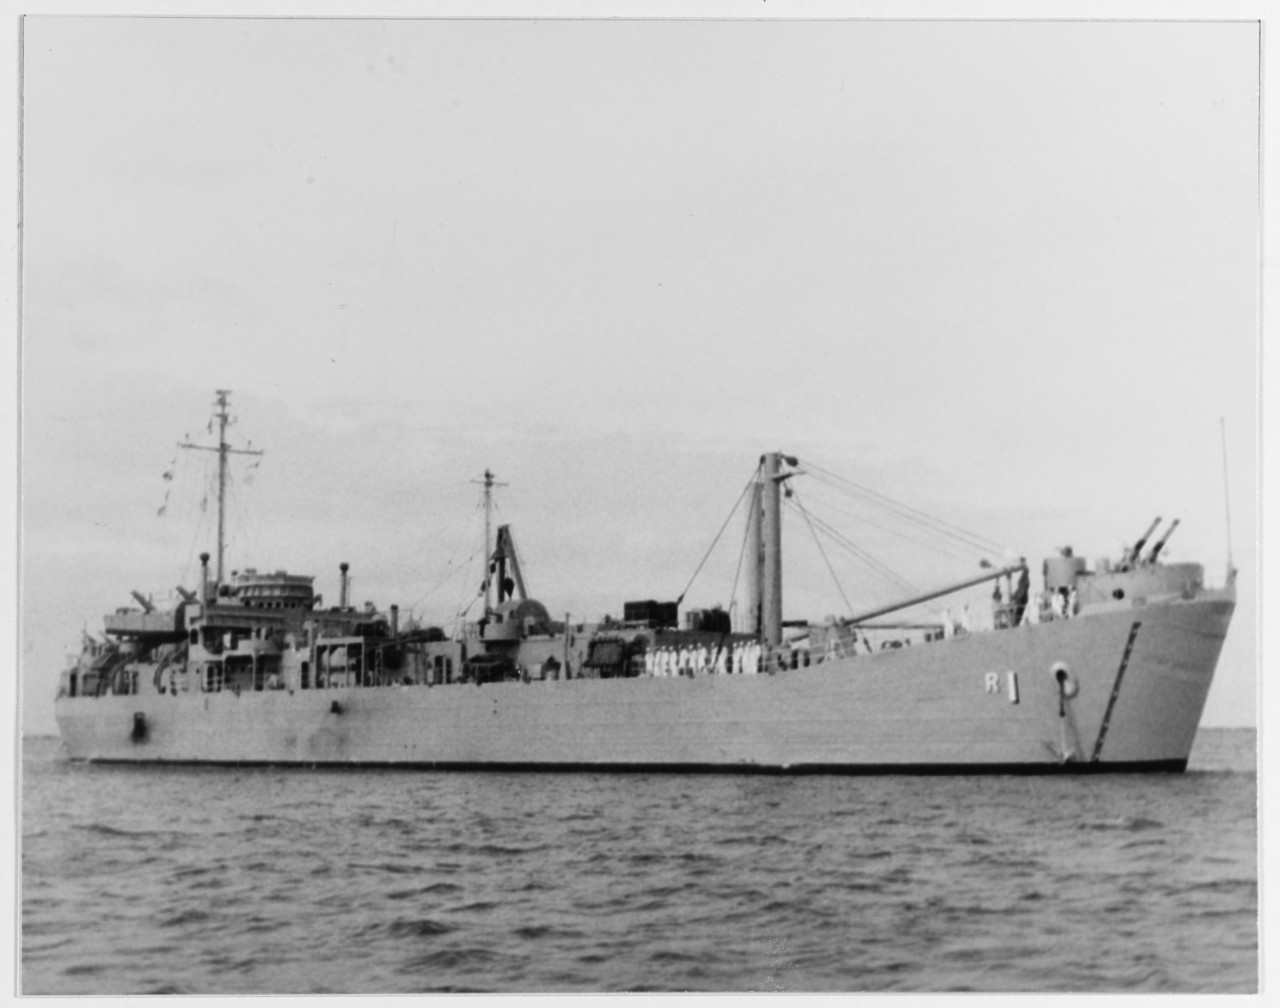 DUK SO (South Korean repair ship, 1944)